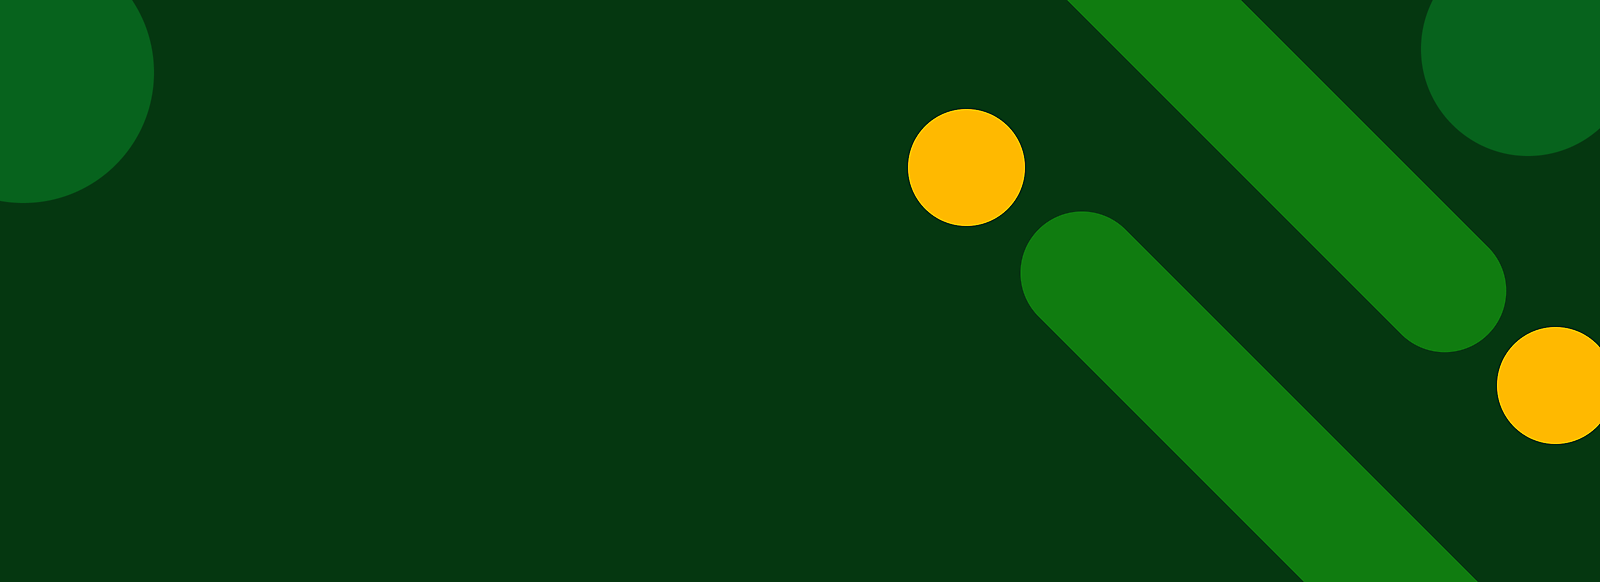 Fond vert abstrait avec des points jaunes et des rayures vertes diagonales.